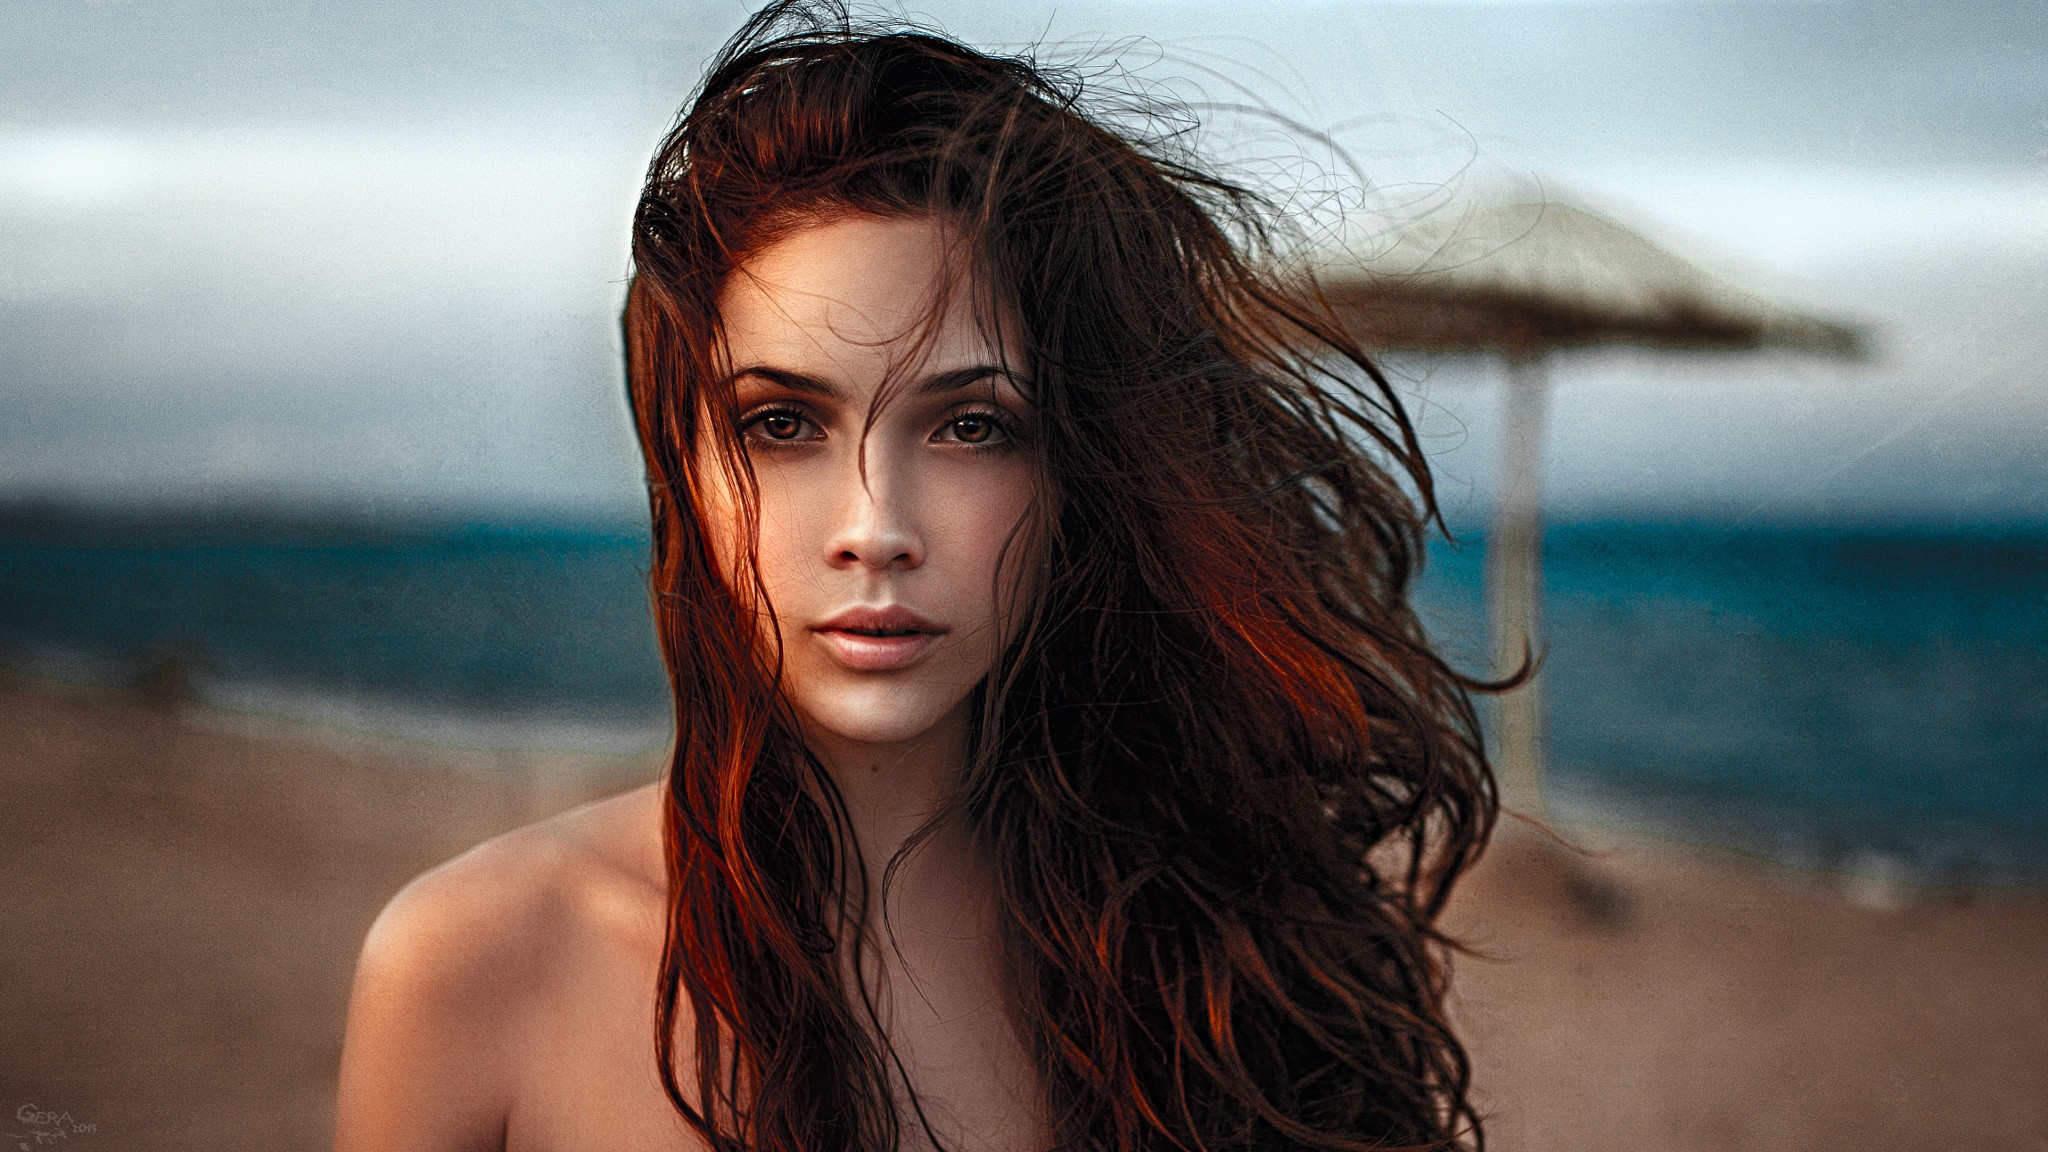 People 2048x1152 women model brown eyes portrait windy Georgy Chernyadyev beach sea depth of field women outdoors hair in face redhead women on beach 2015 (Year) face